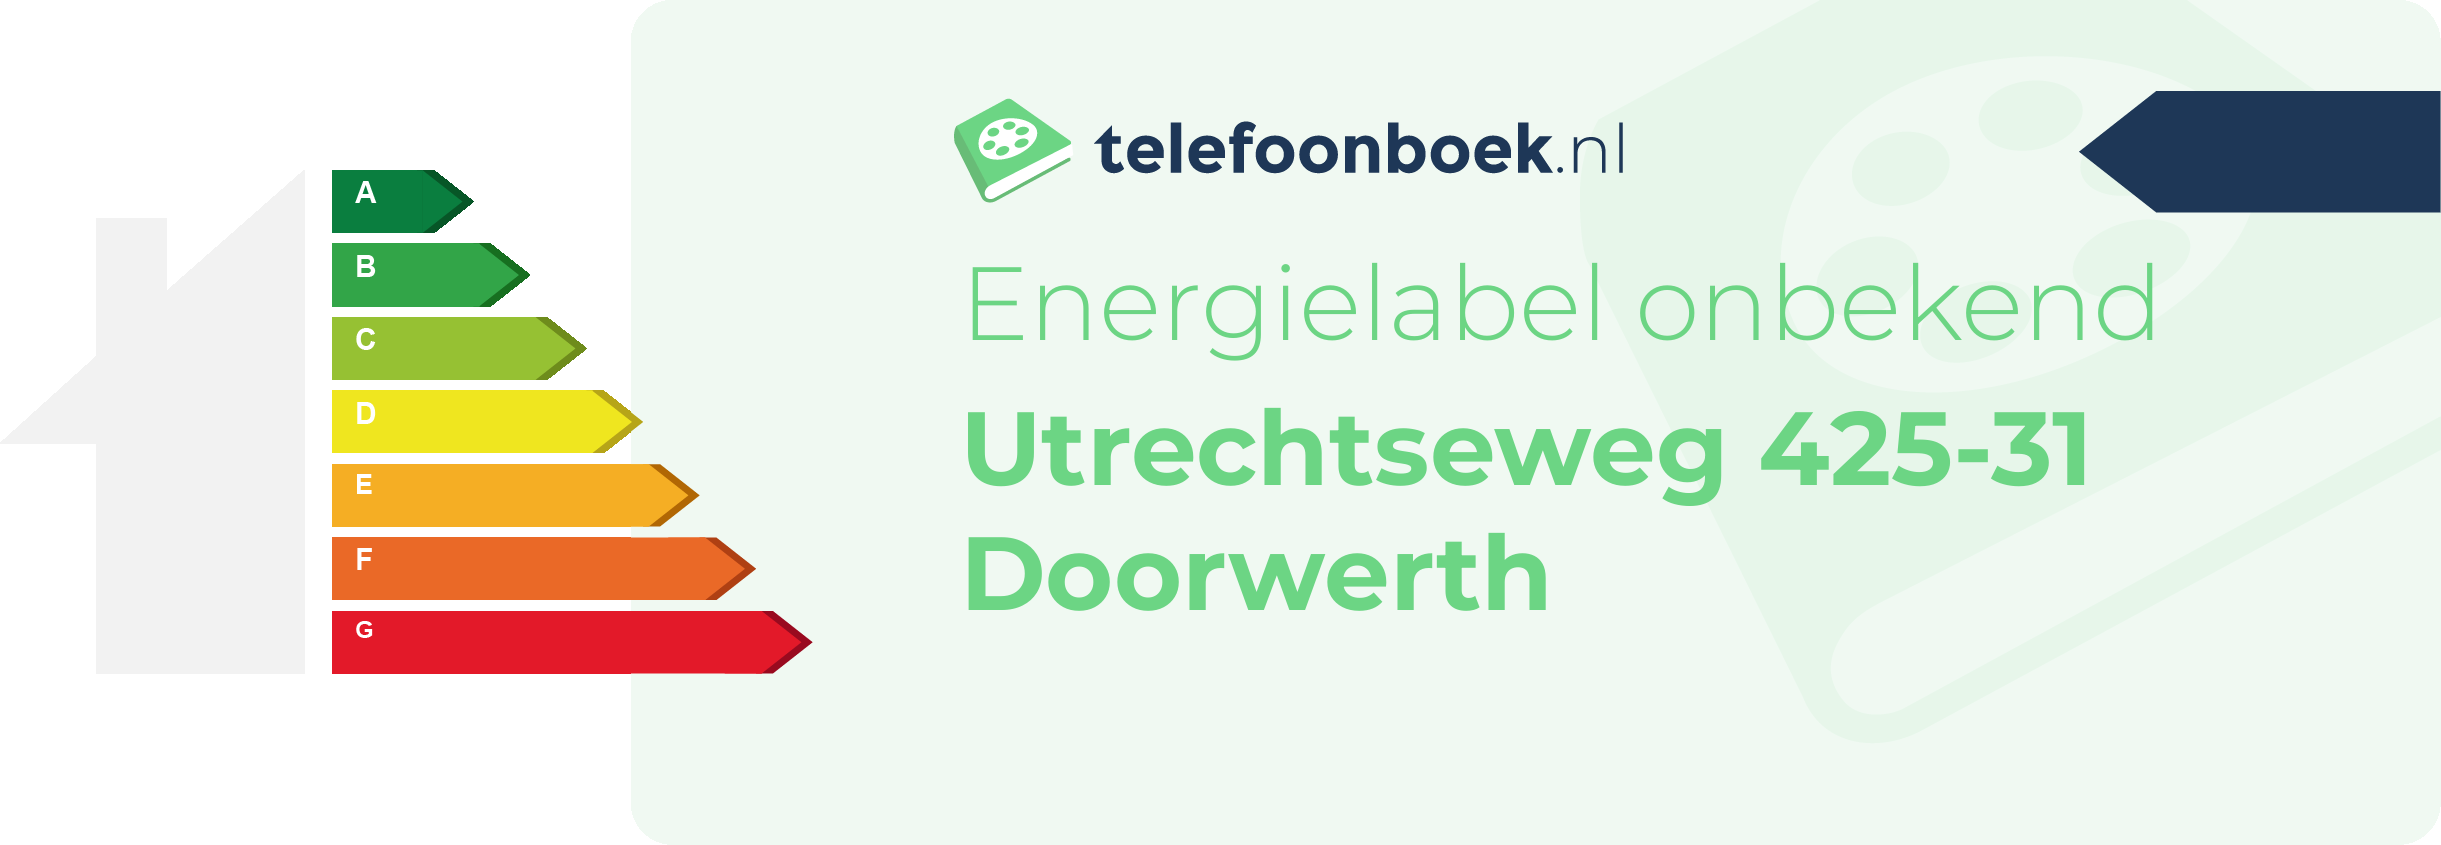 Energielabel Utrechtseweg 425-31 Doorwerth